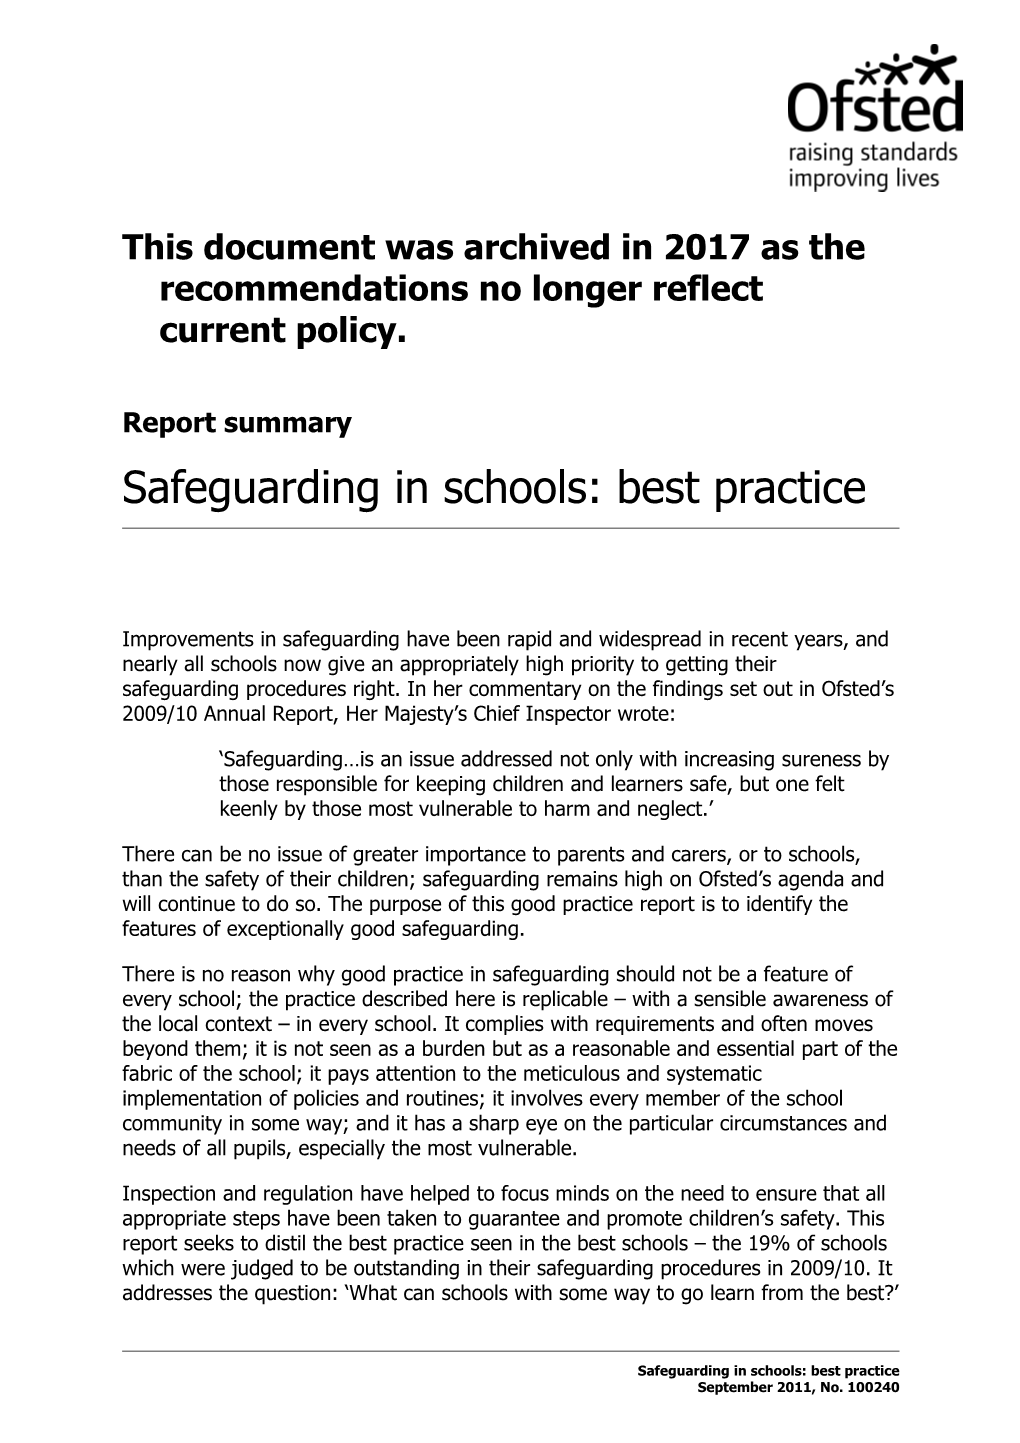 Safeguarding in Schools: Best Practice